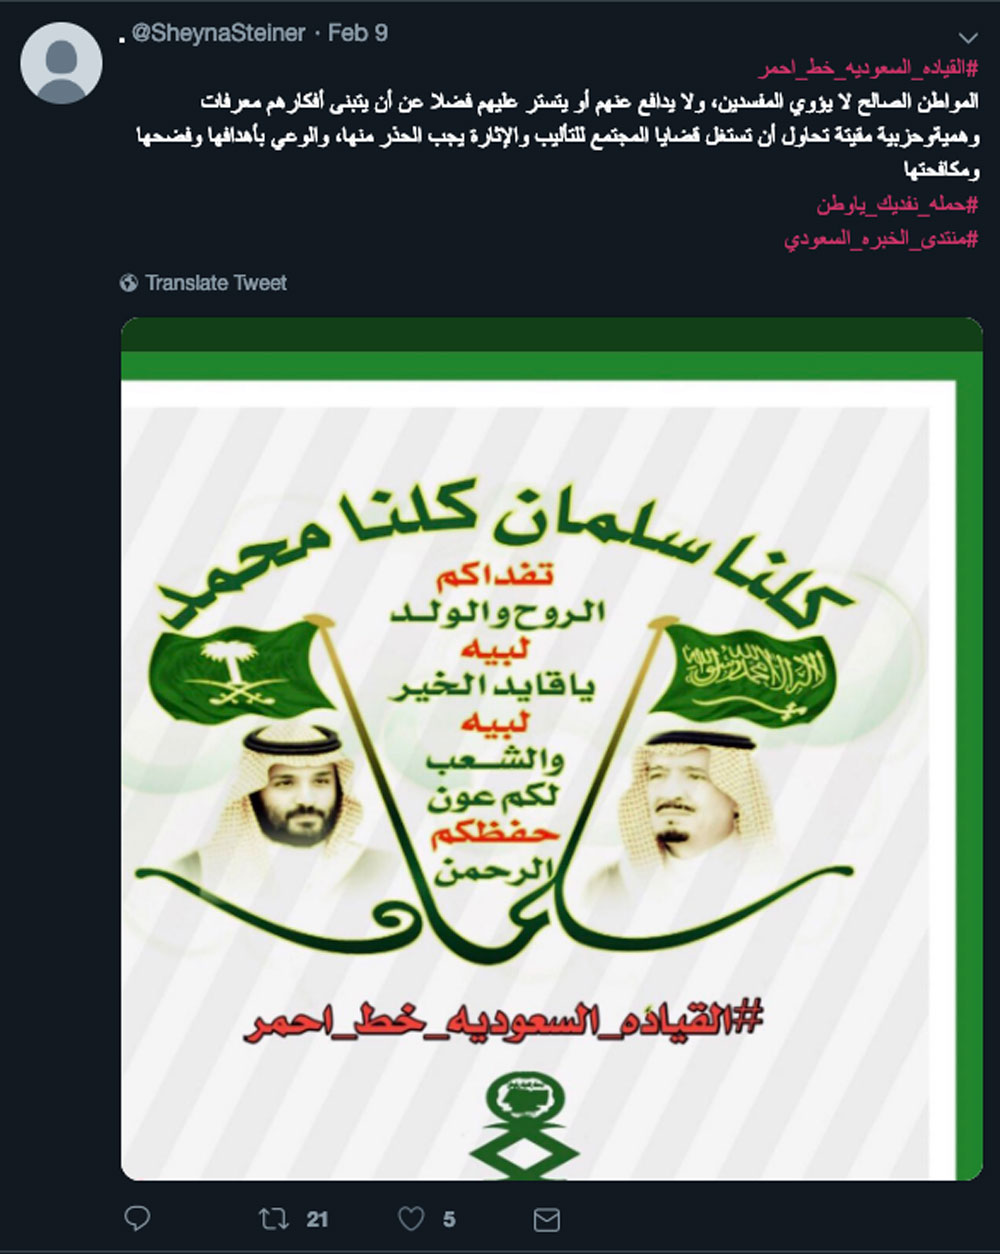  Steiner's account has posted tweets promoting Saudi leaders [Al Jazeera]